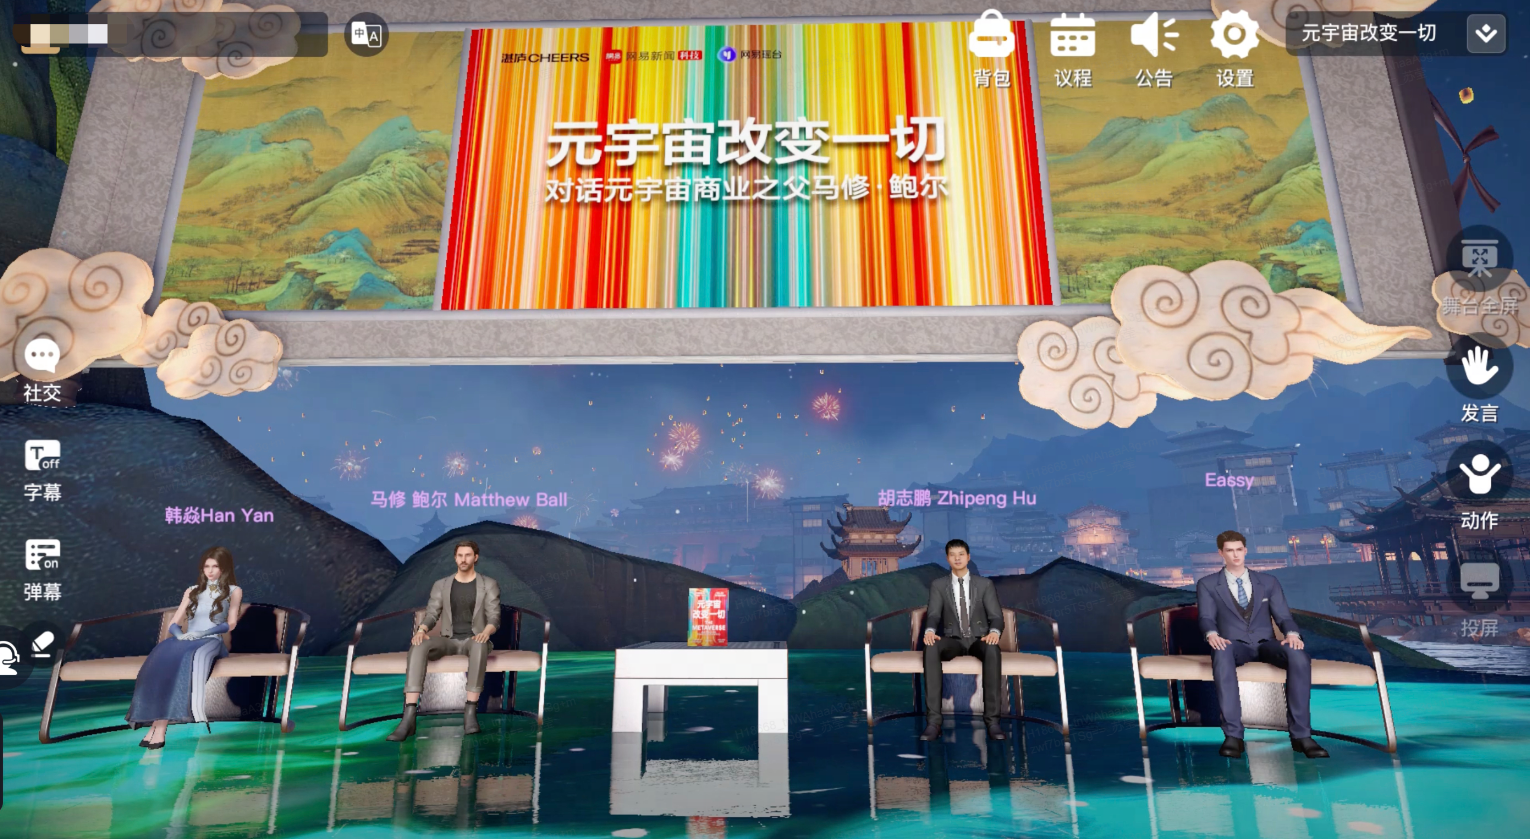 图片中是一个虚拟的会议场景，四位虚拟形象坐在悬空的透明平台上，背景是夜晚的古典中国风水墨画面。